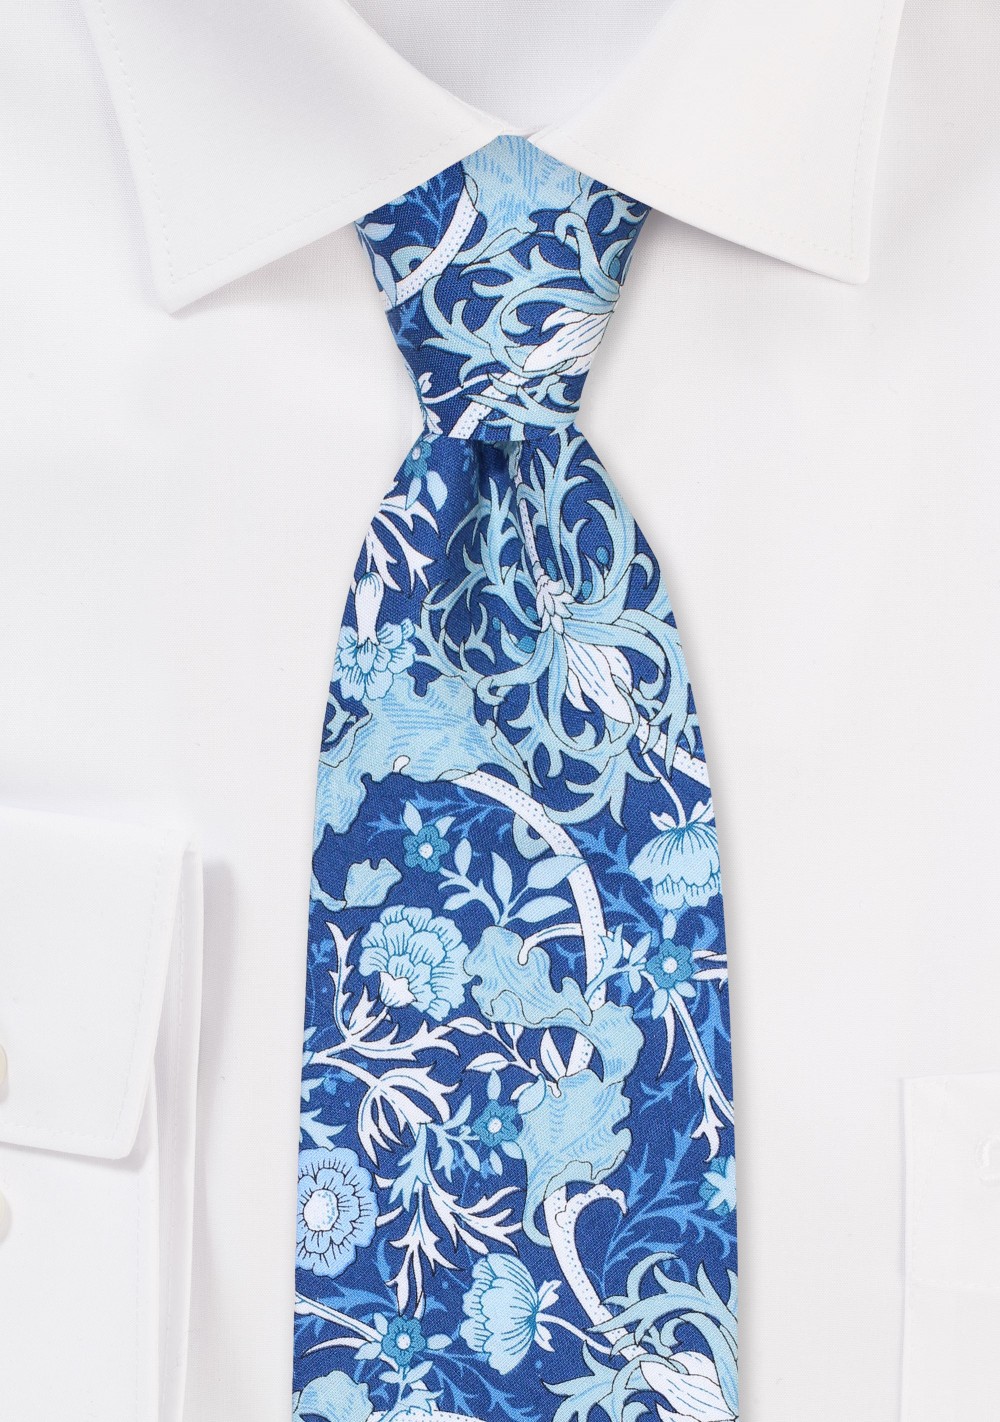 Wild Floral Print Cotton Tie in Blue